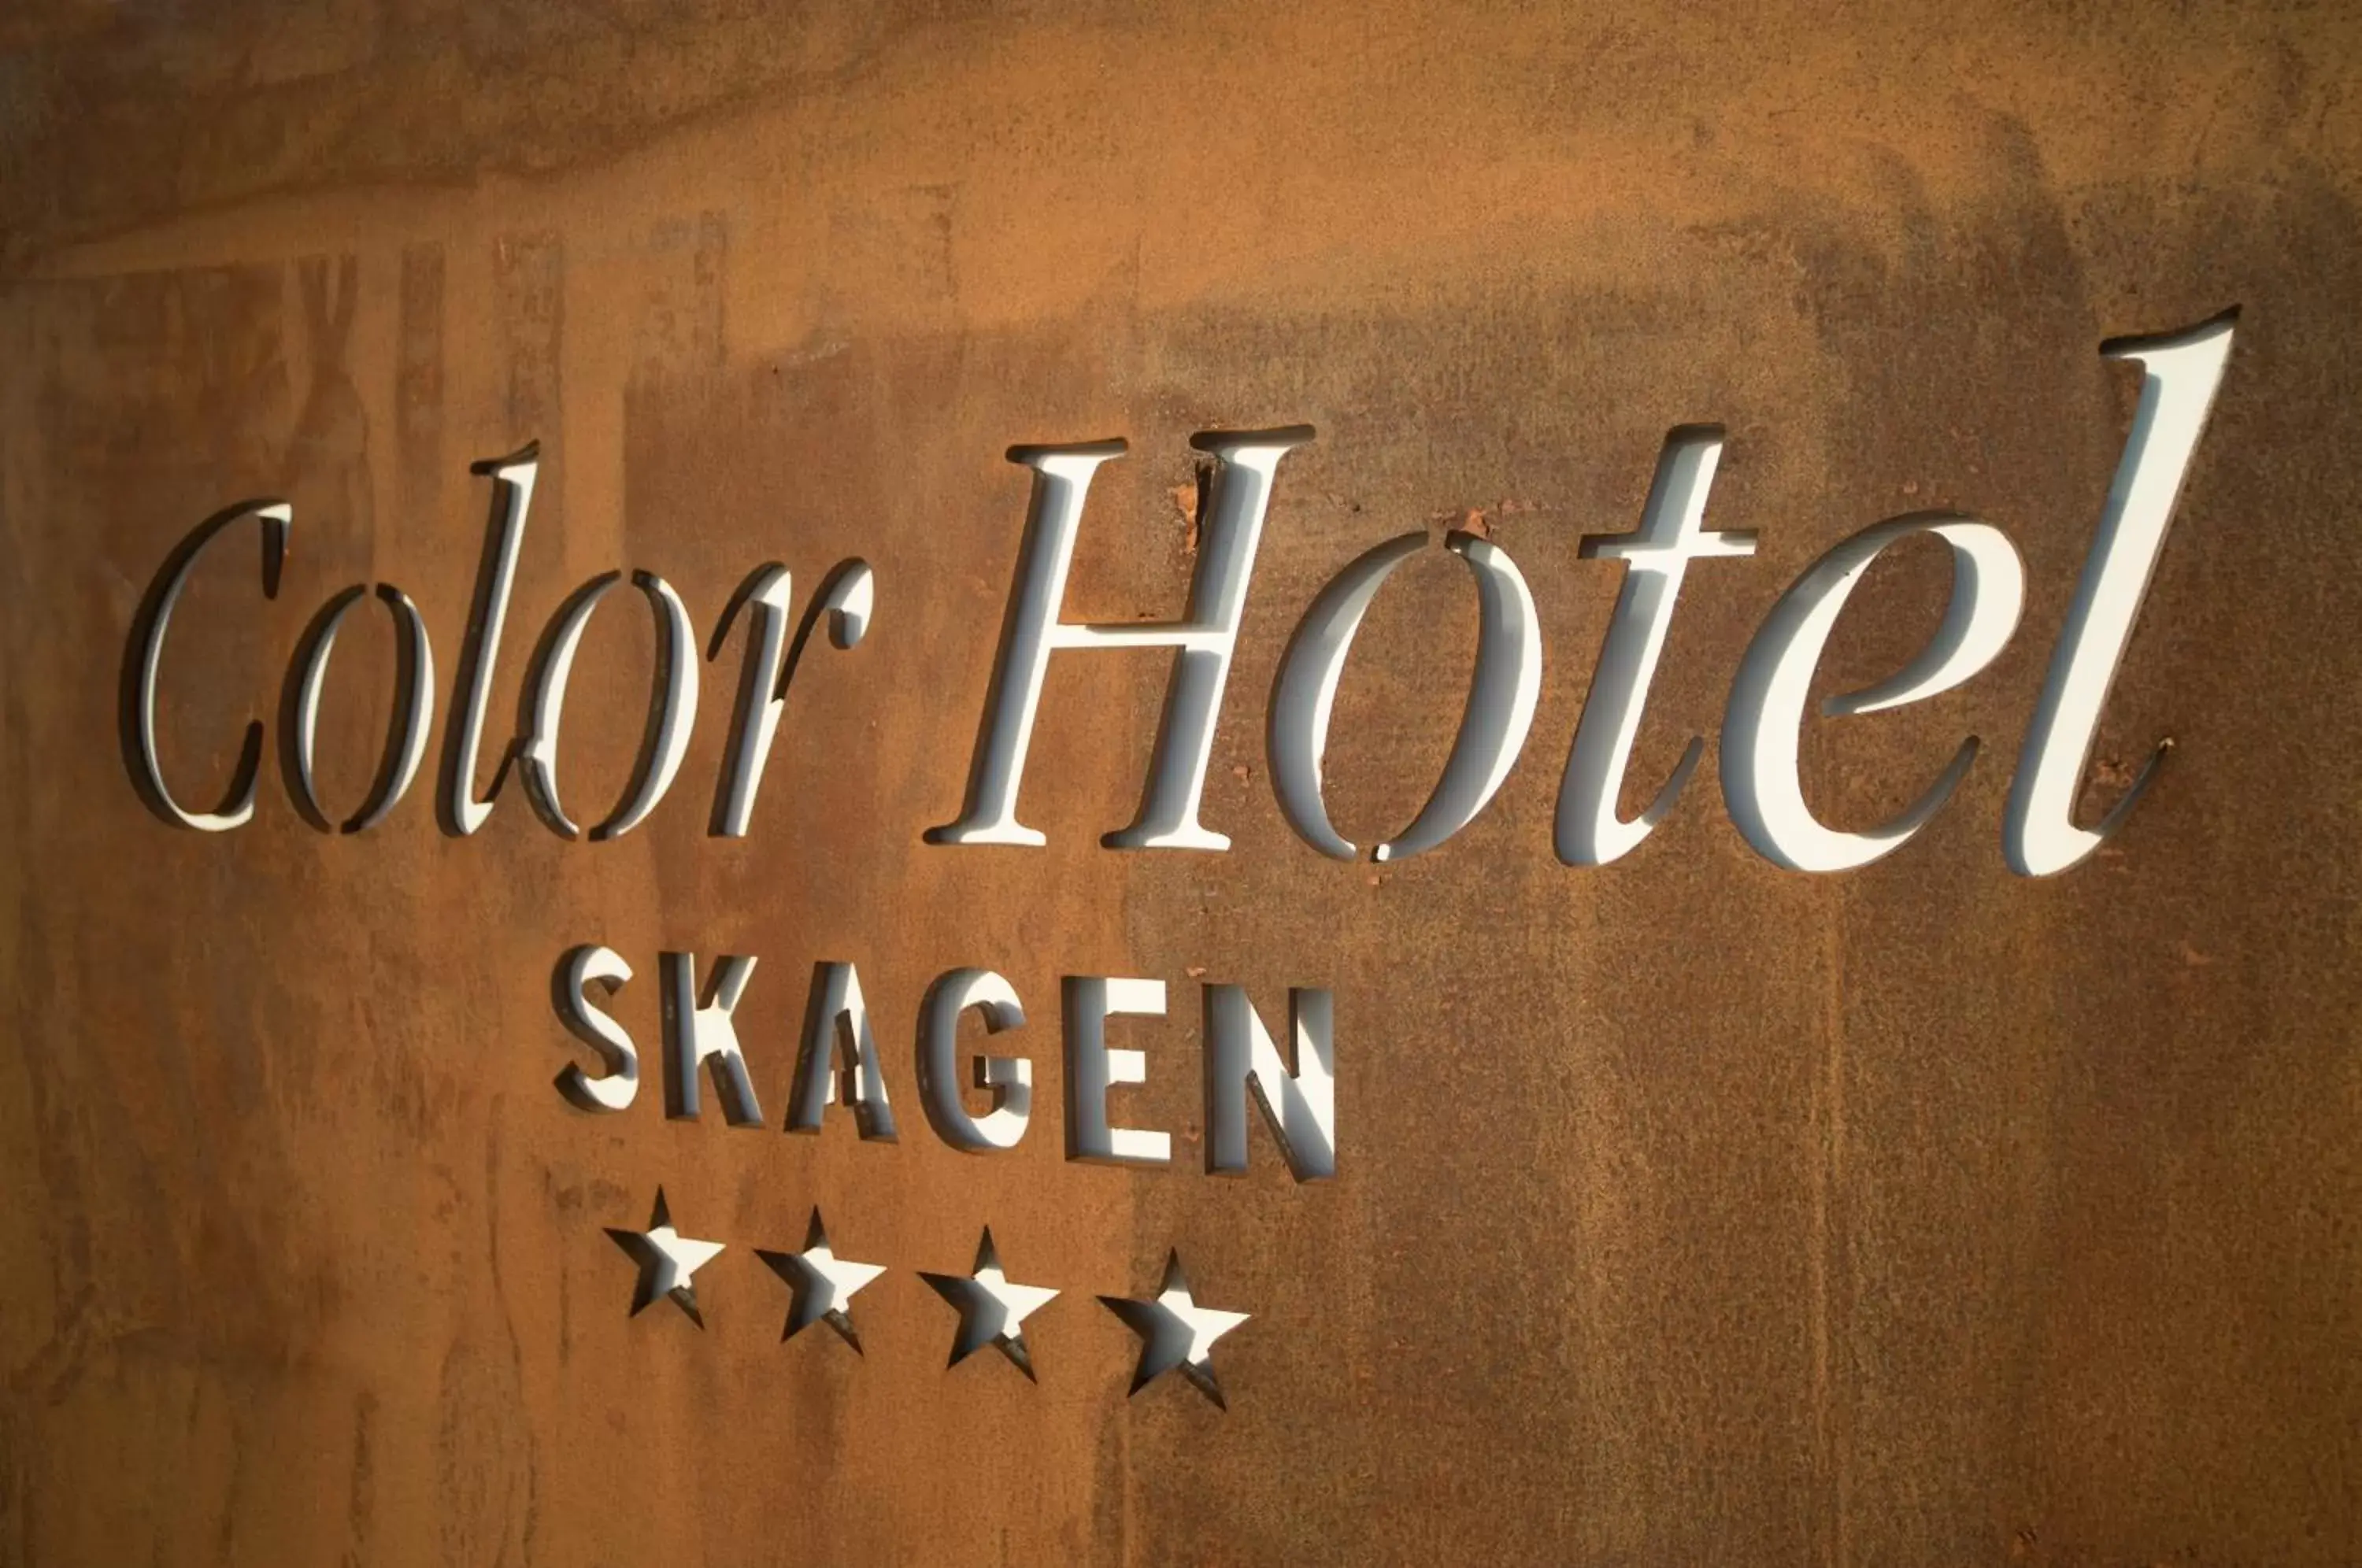 Property logo or sign in Color Hotel Skagen